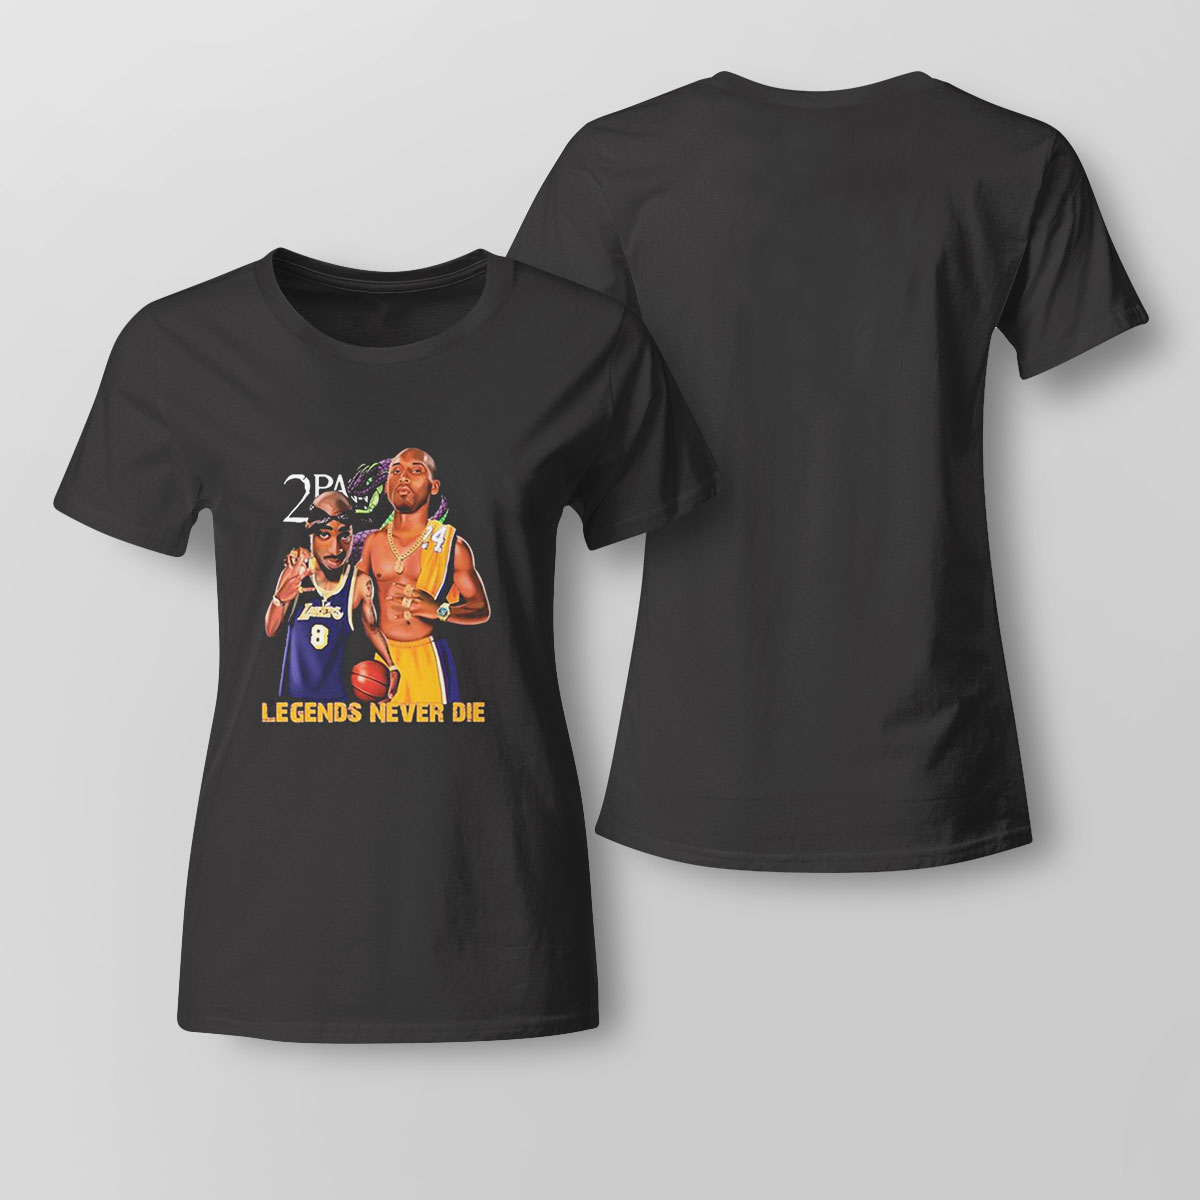 Original 2pac Remember Me Kobe Bryant Lakers Legends Never Die T-shirt,Sweater,  Hoodie, And Long Sleeved, Ladies, Tank Top